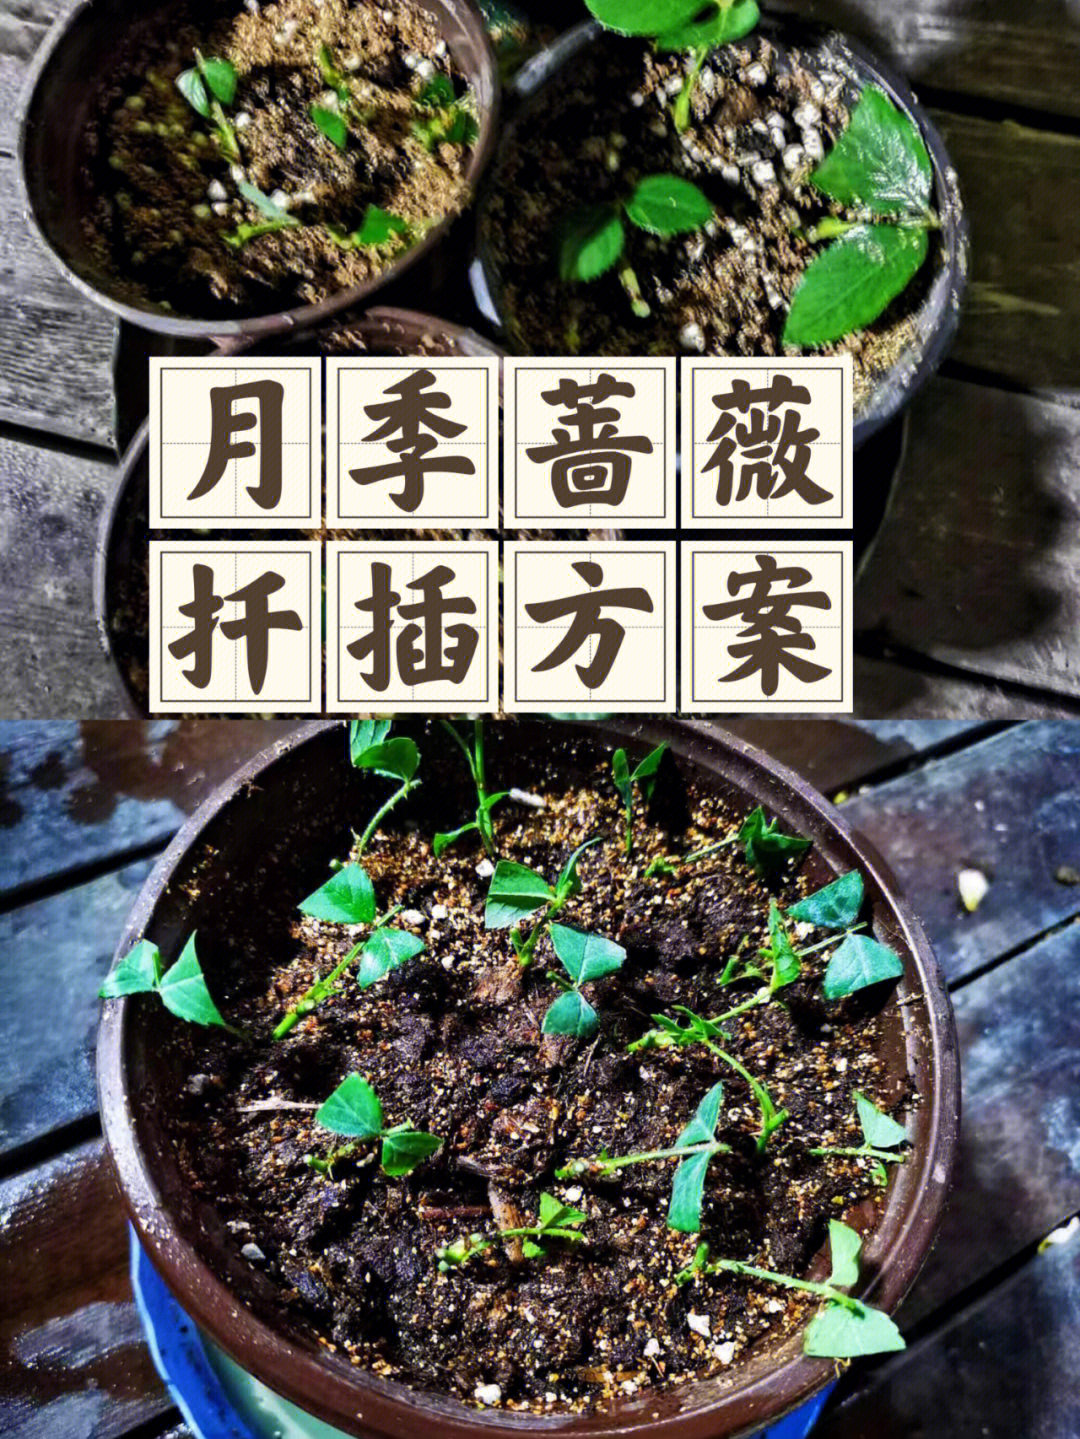 竹节海棠扦插方法图片